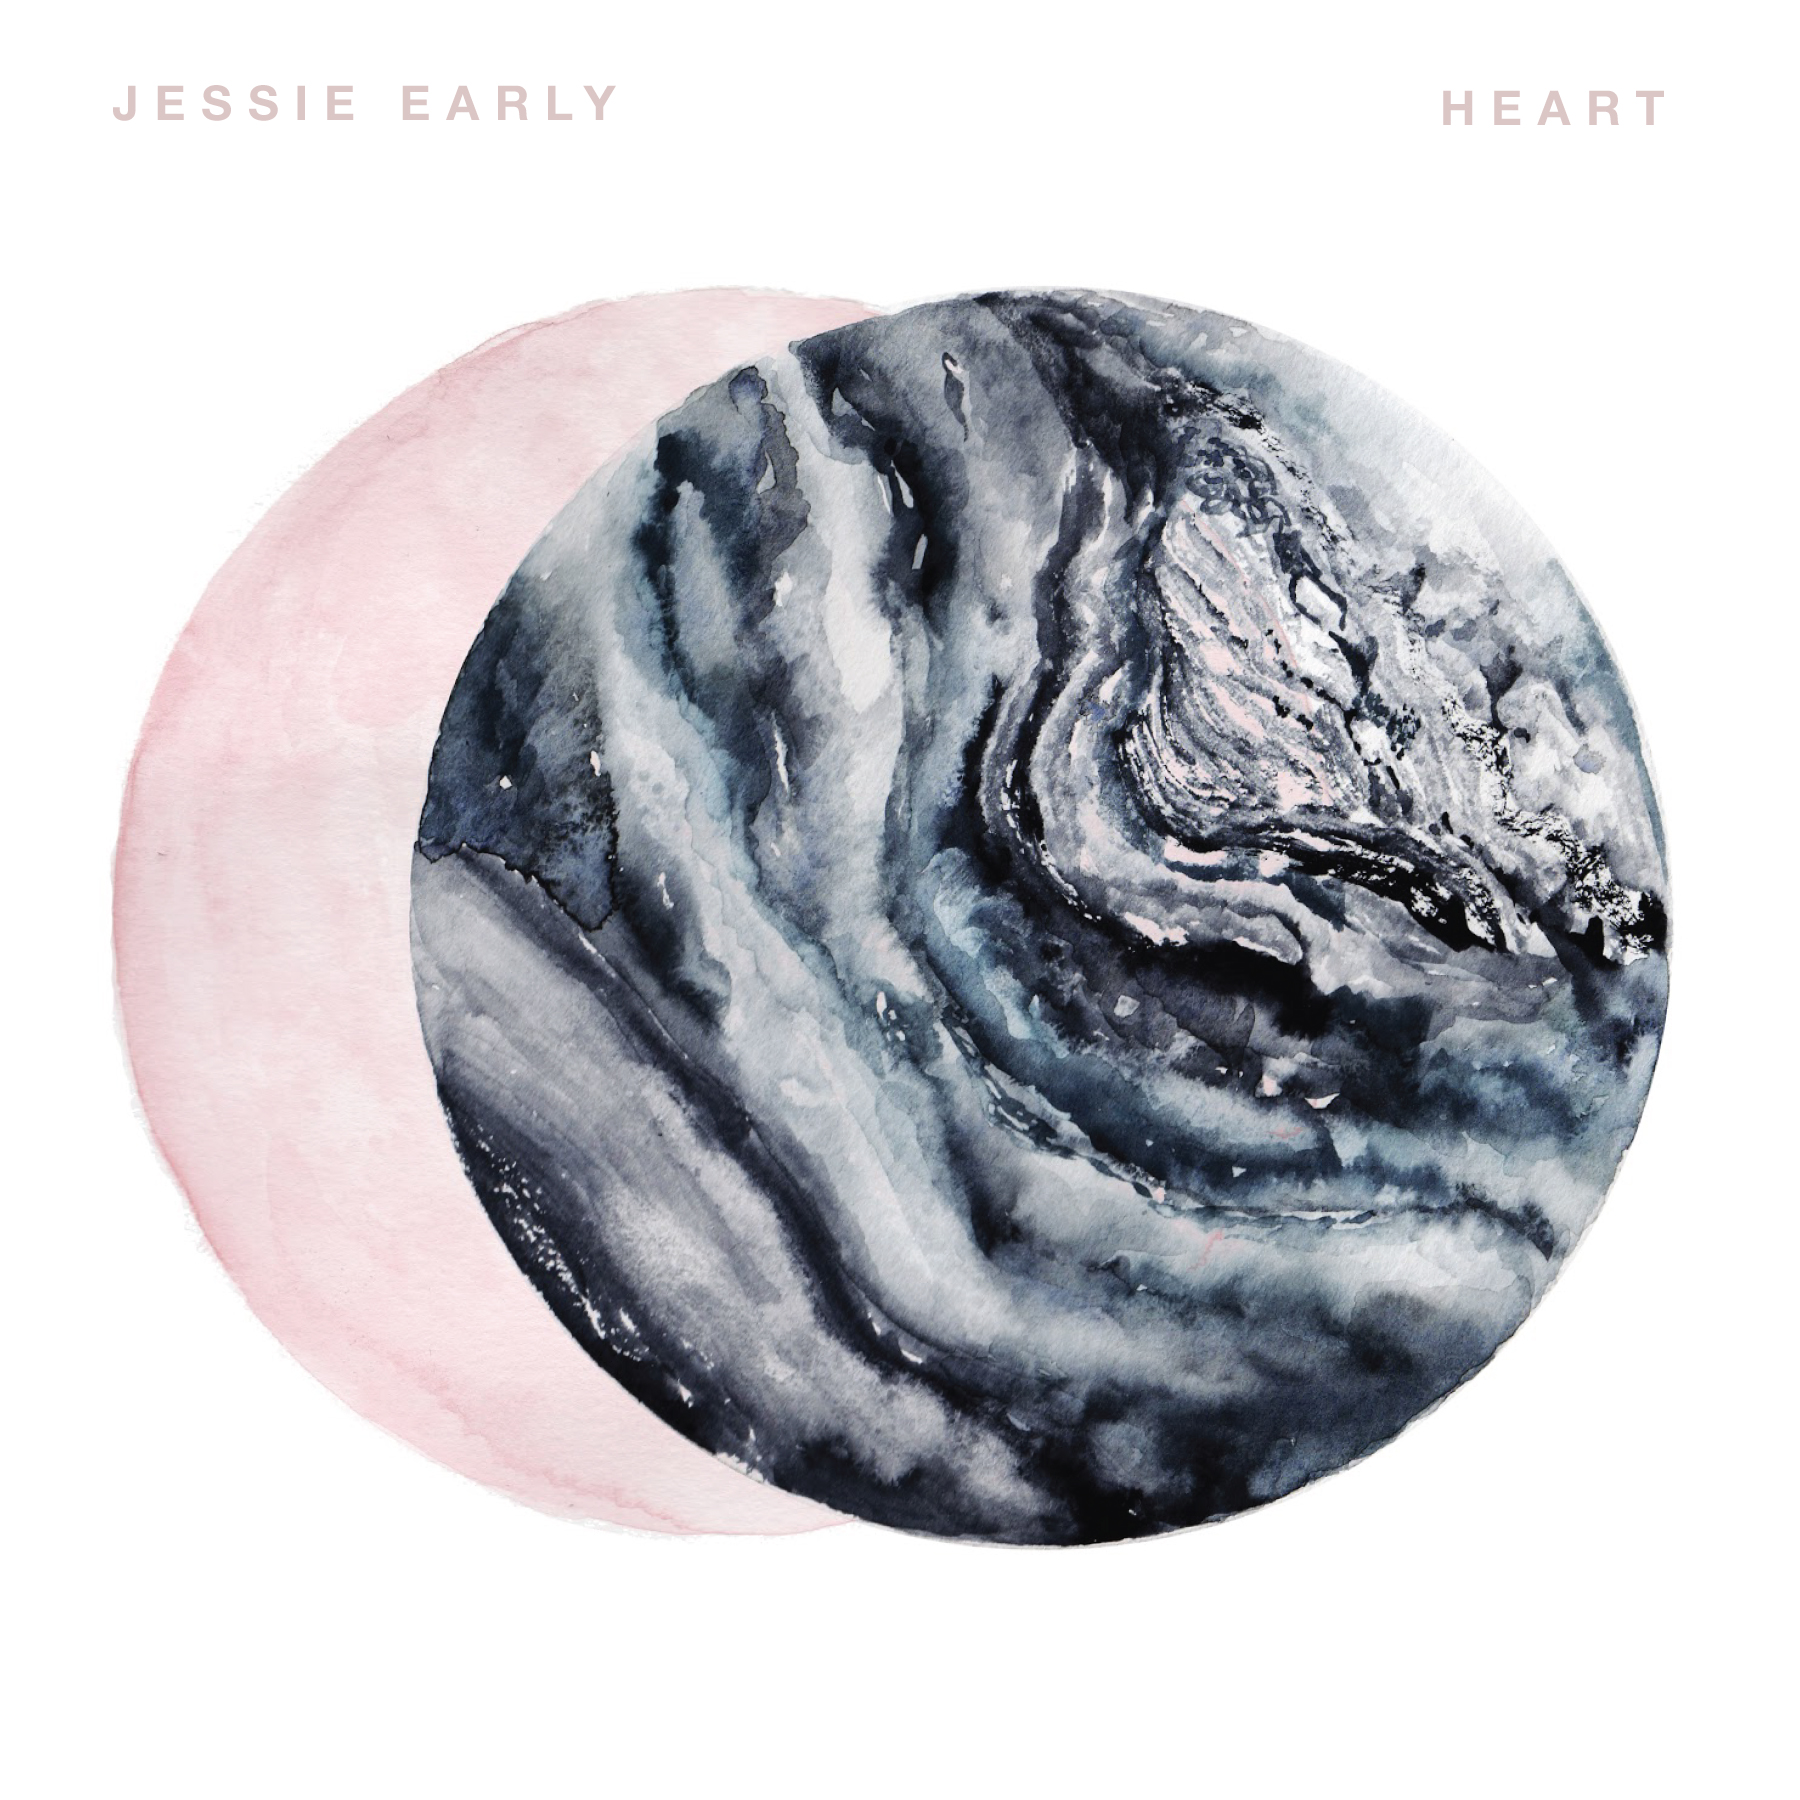 Jessie Early – “Heart”